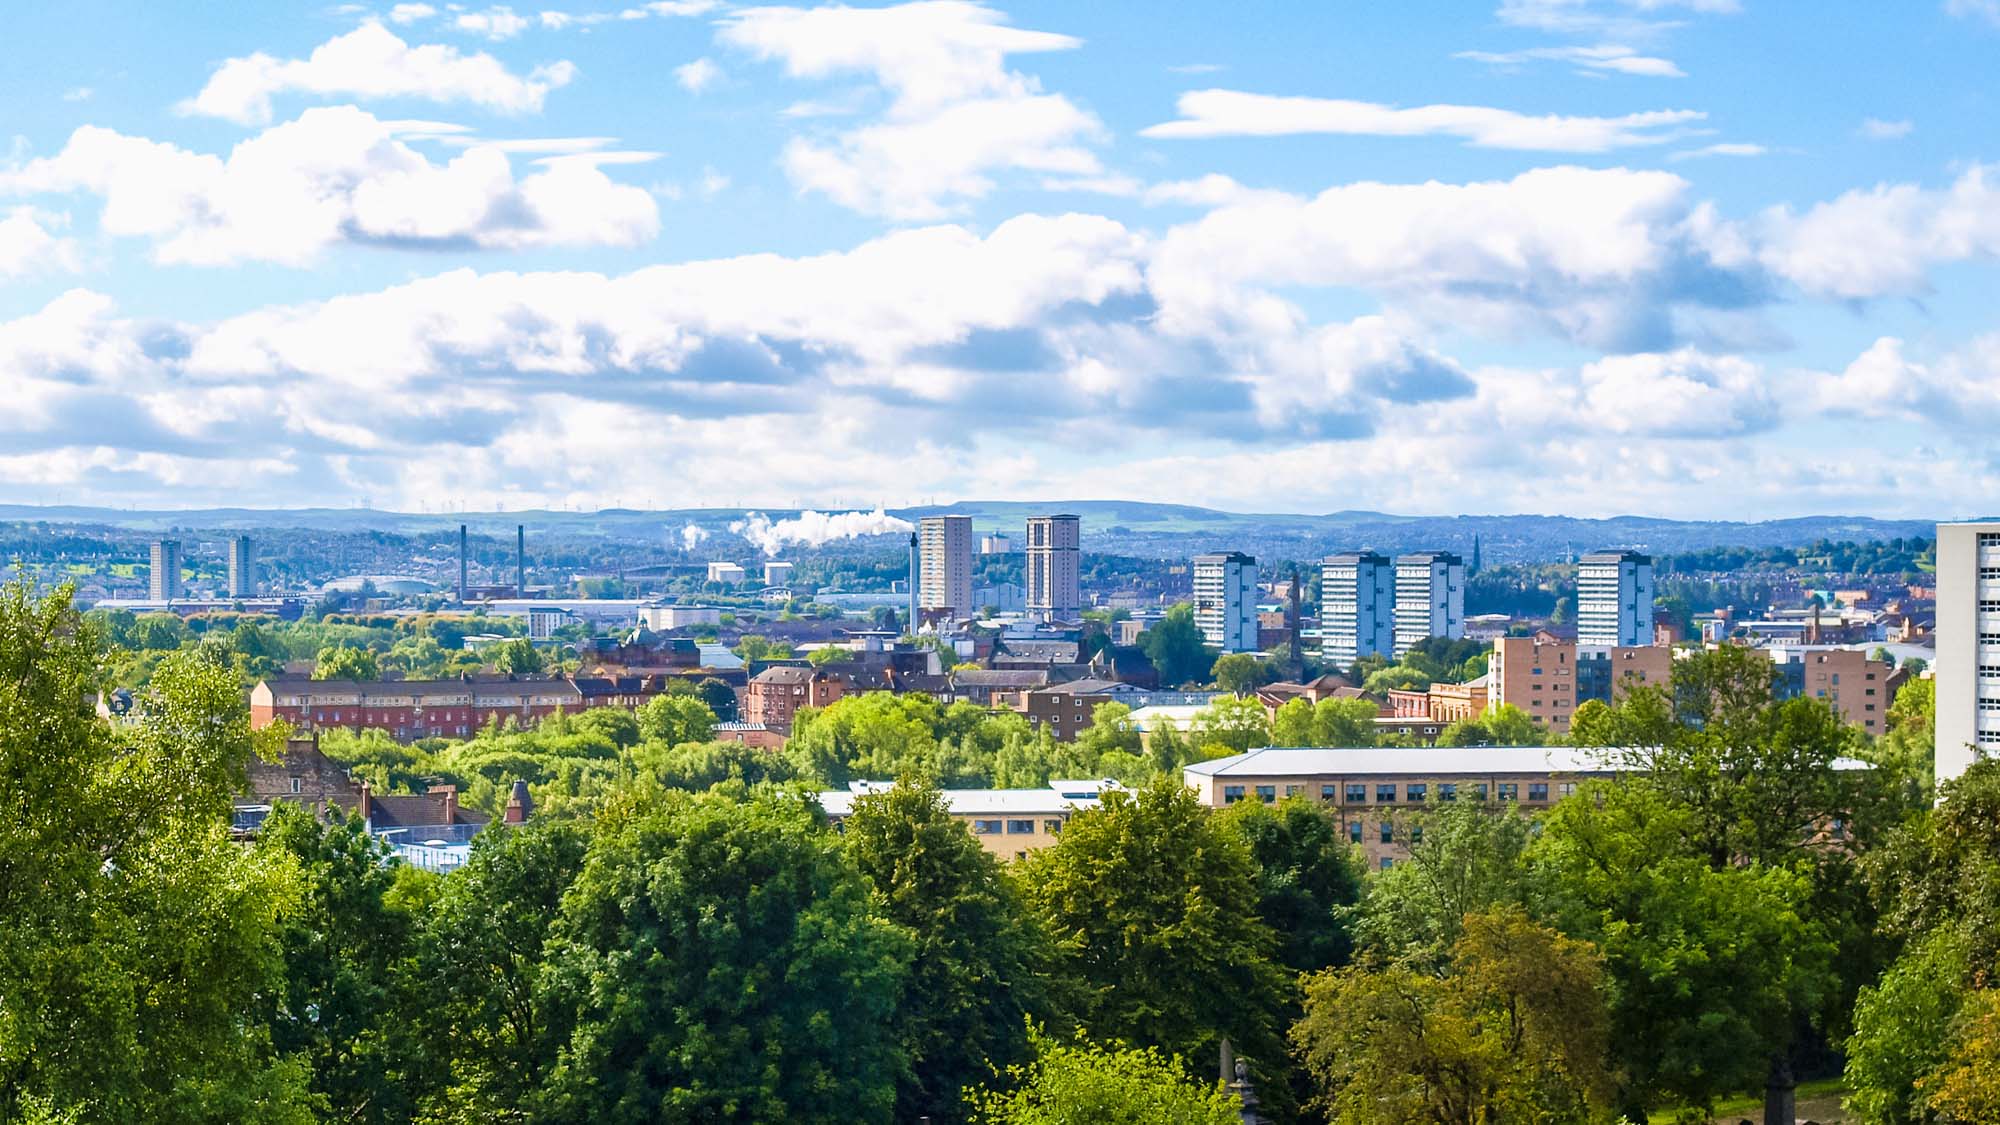 Glasgow City Skyline. Shutterstock